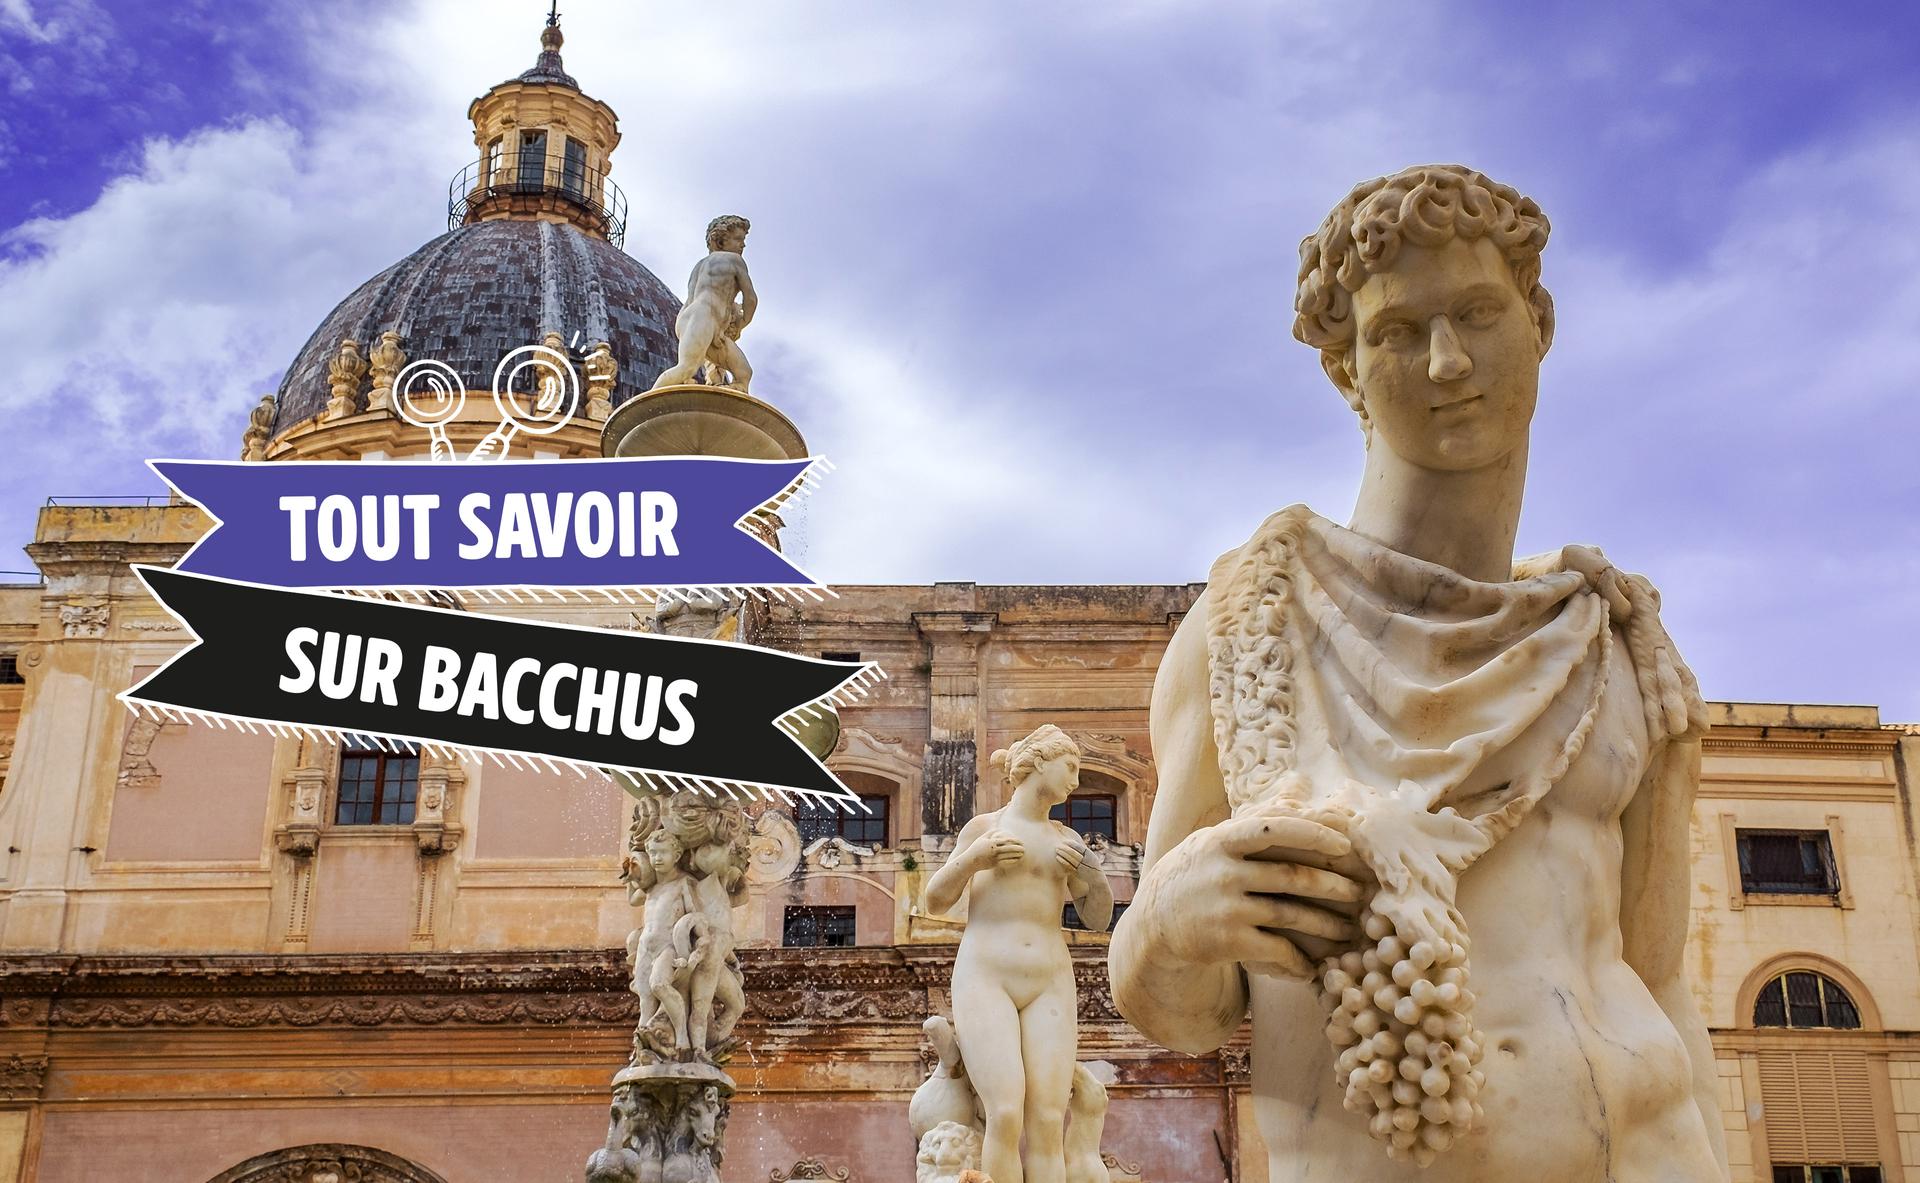 Tout savoir sur Bacchus